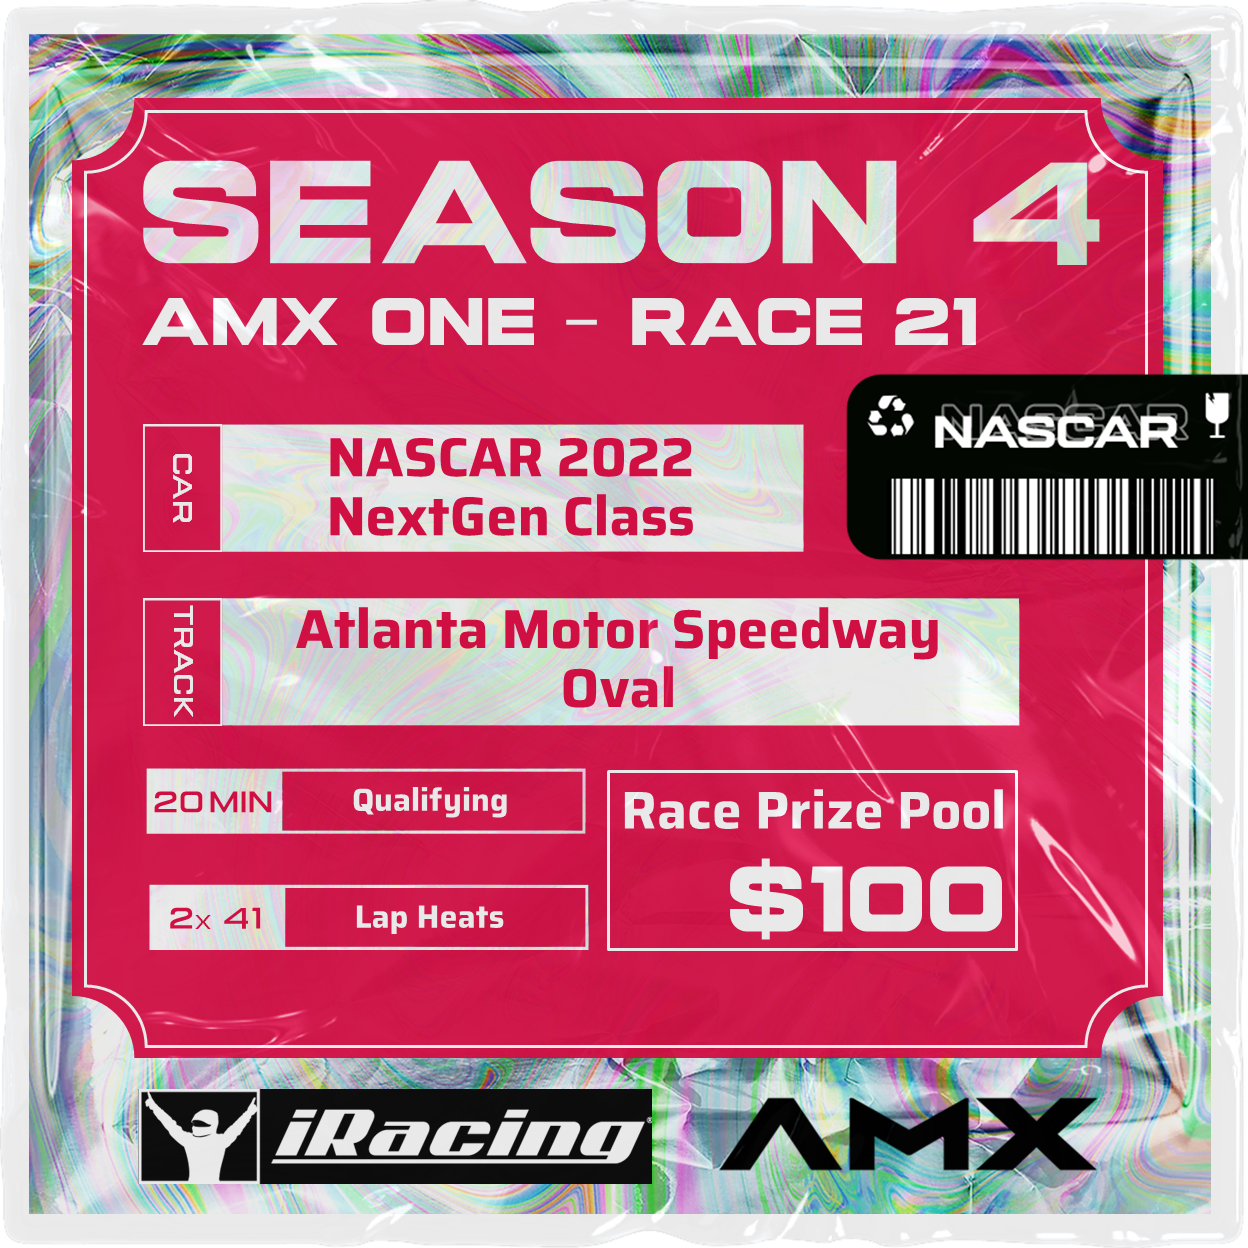 AMX ONE - RACE 21 [3/23 - 5:50 PM GMT]